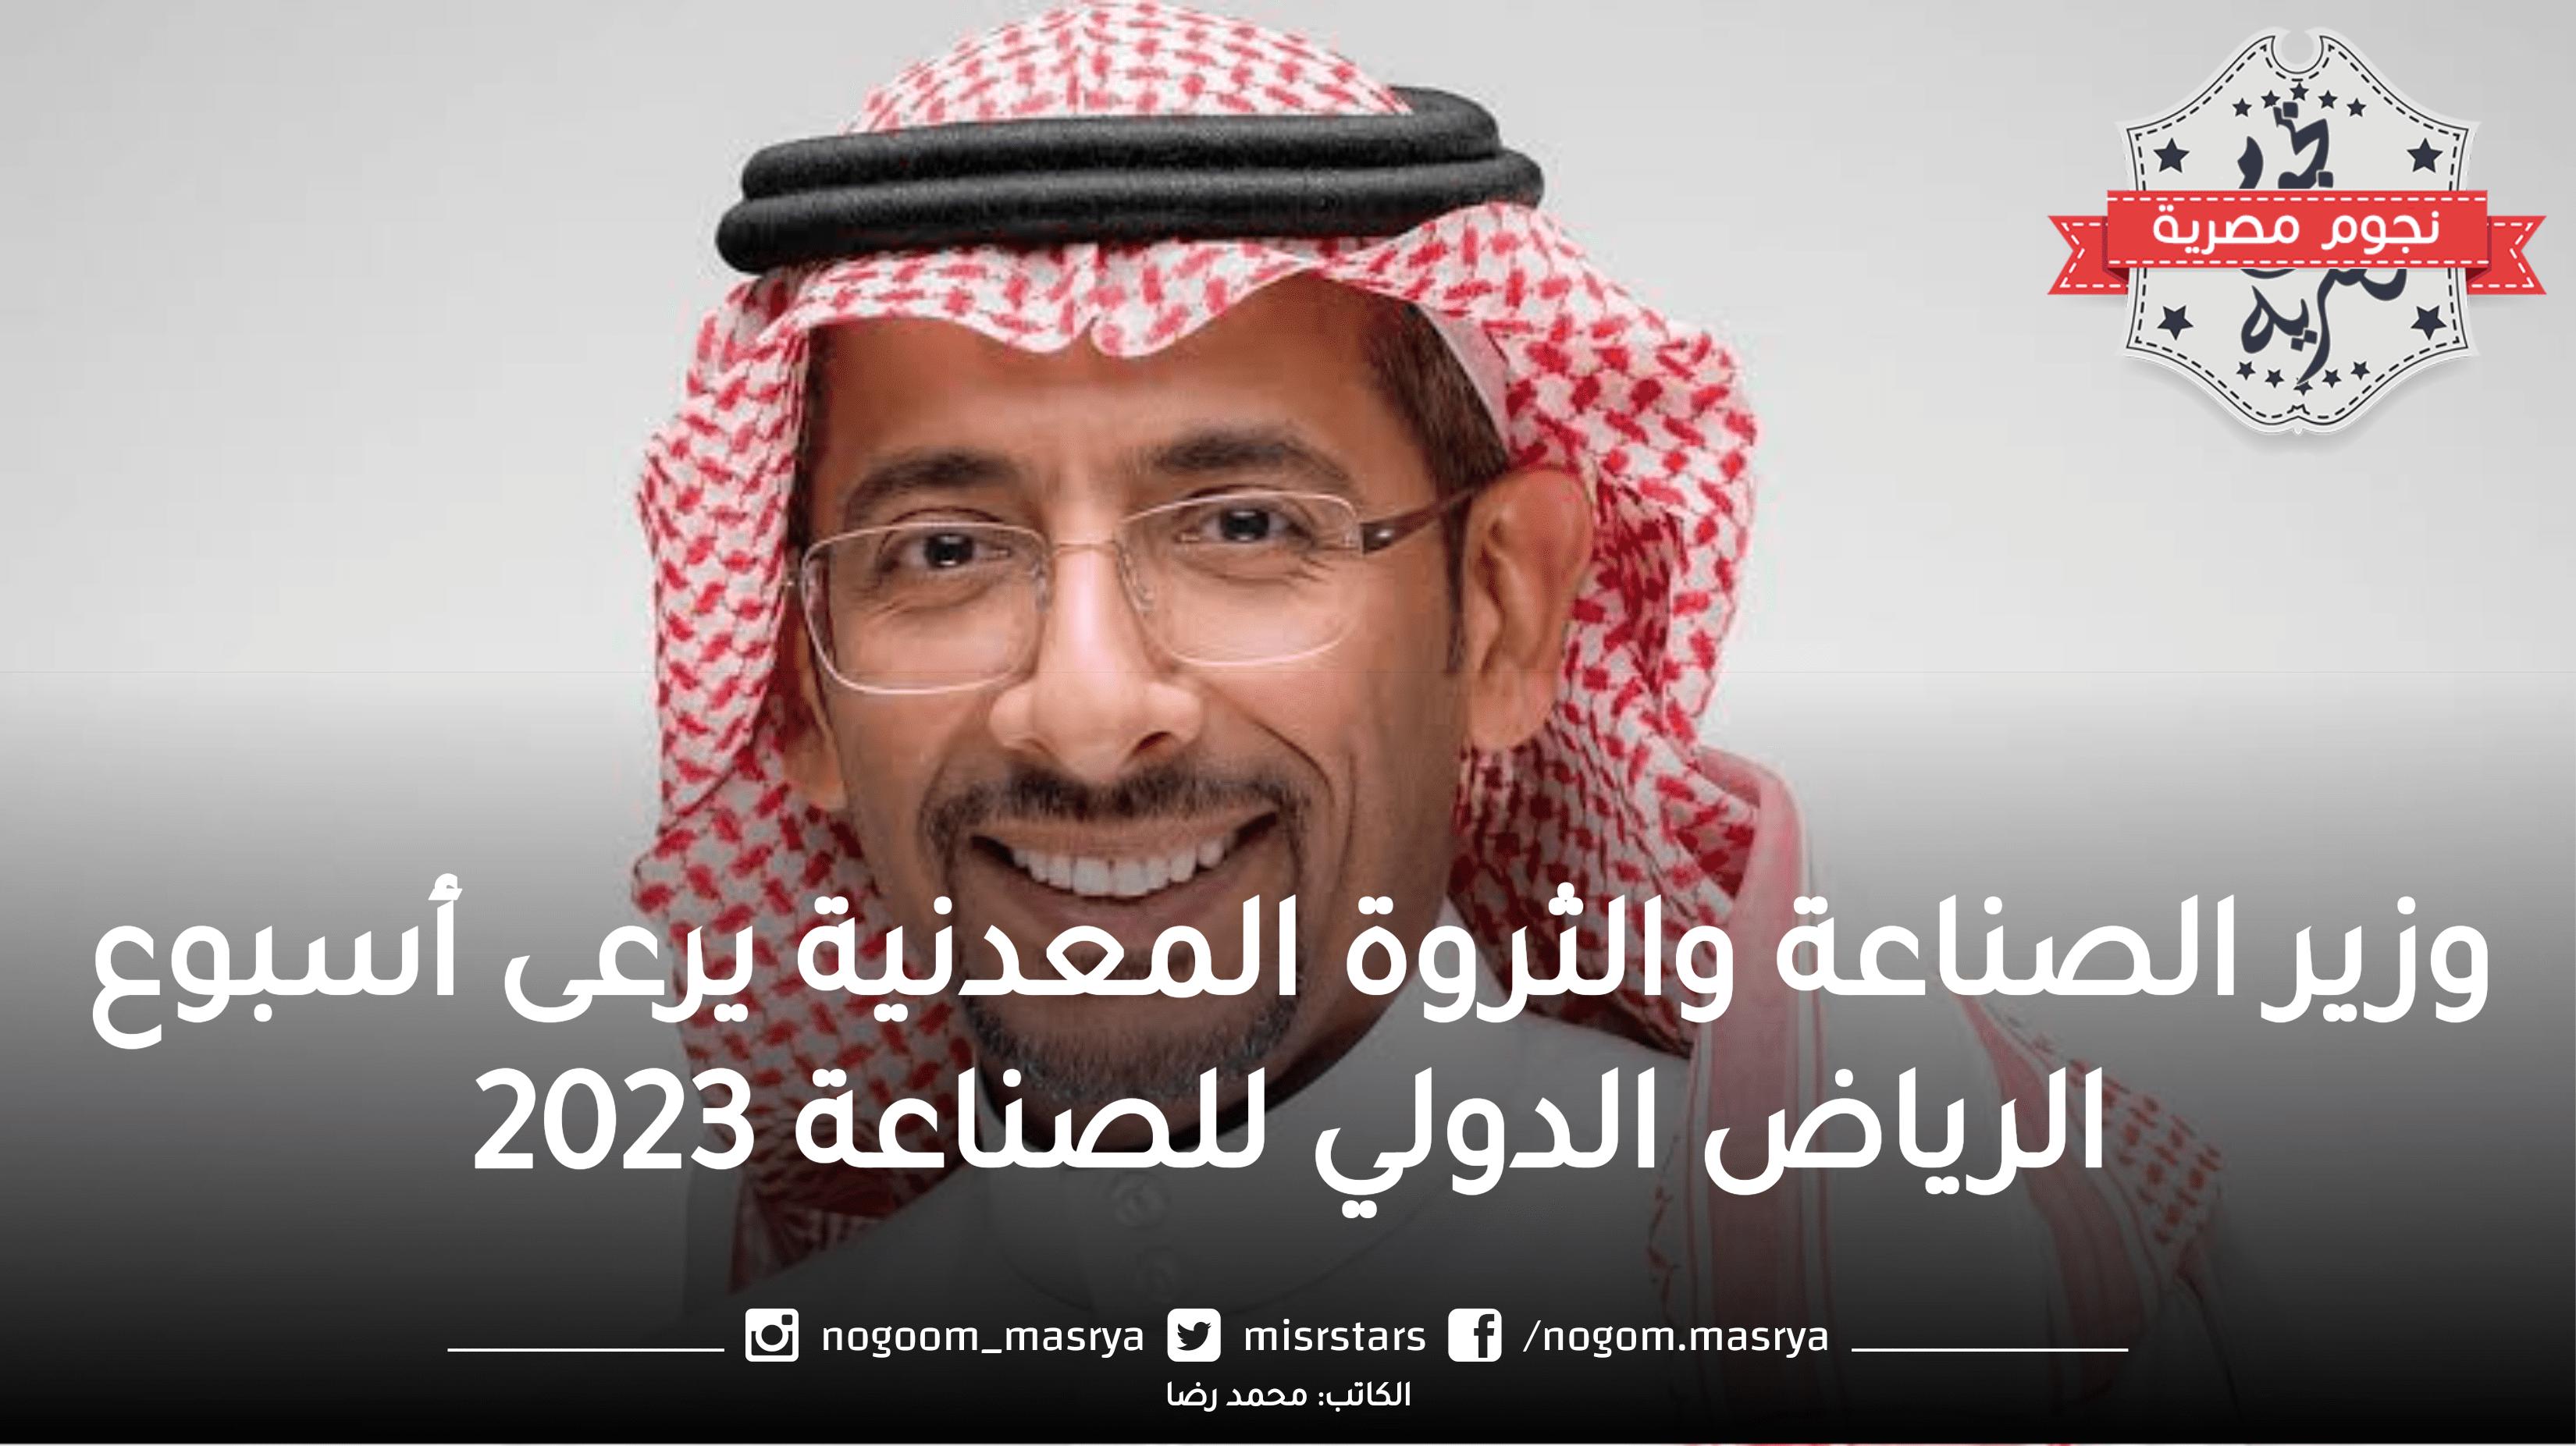 وزير الصناعة والثروة المعدنية يرعى “أسبوع الرياض الدولي” للصناعة 2023